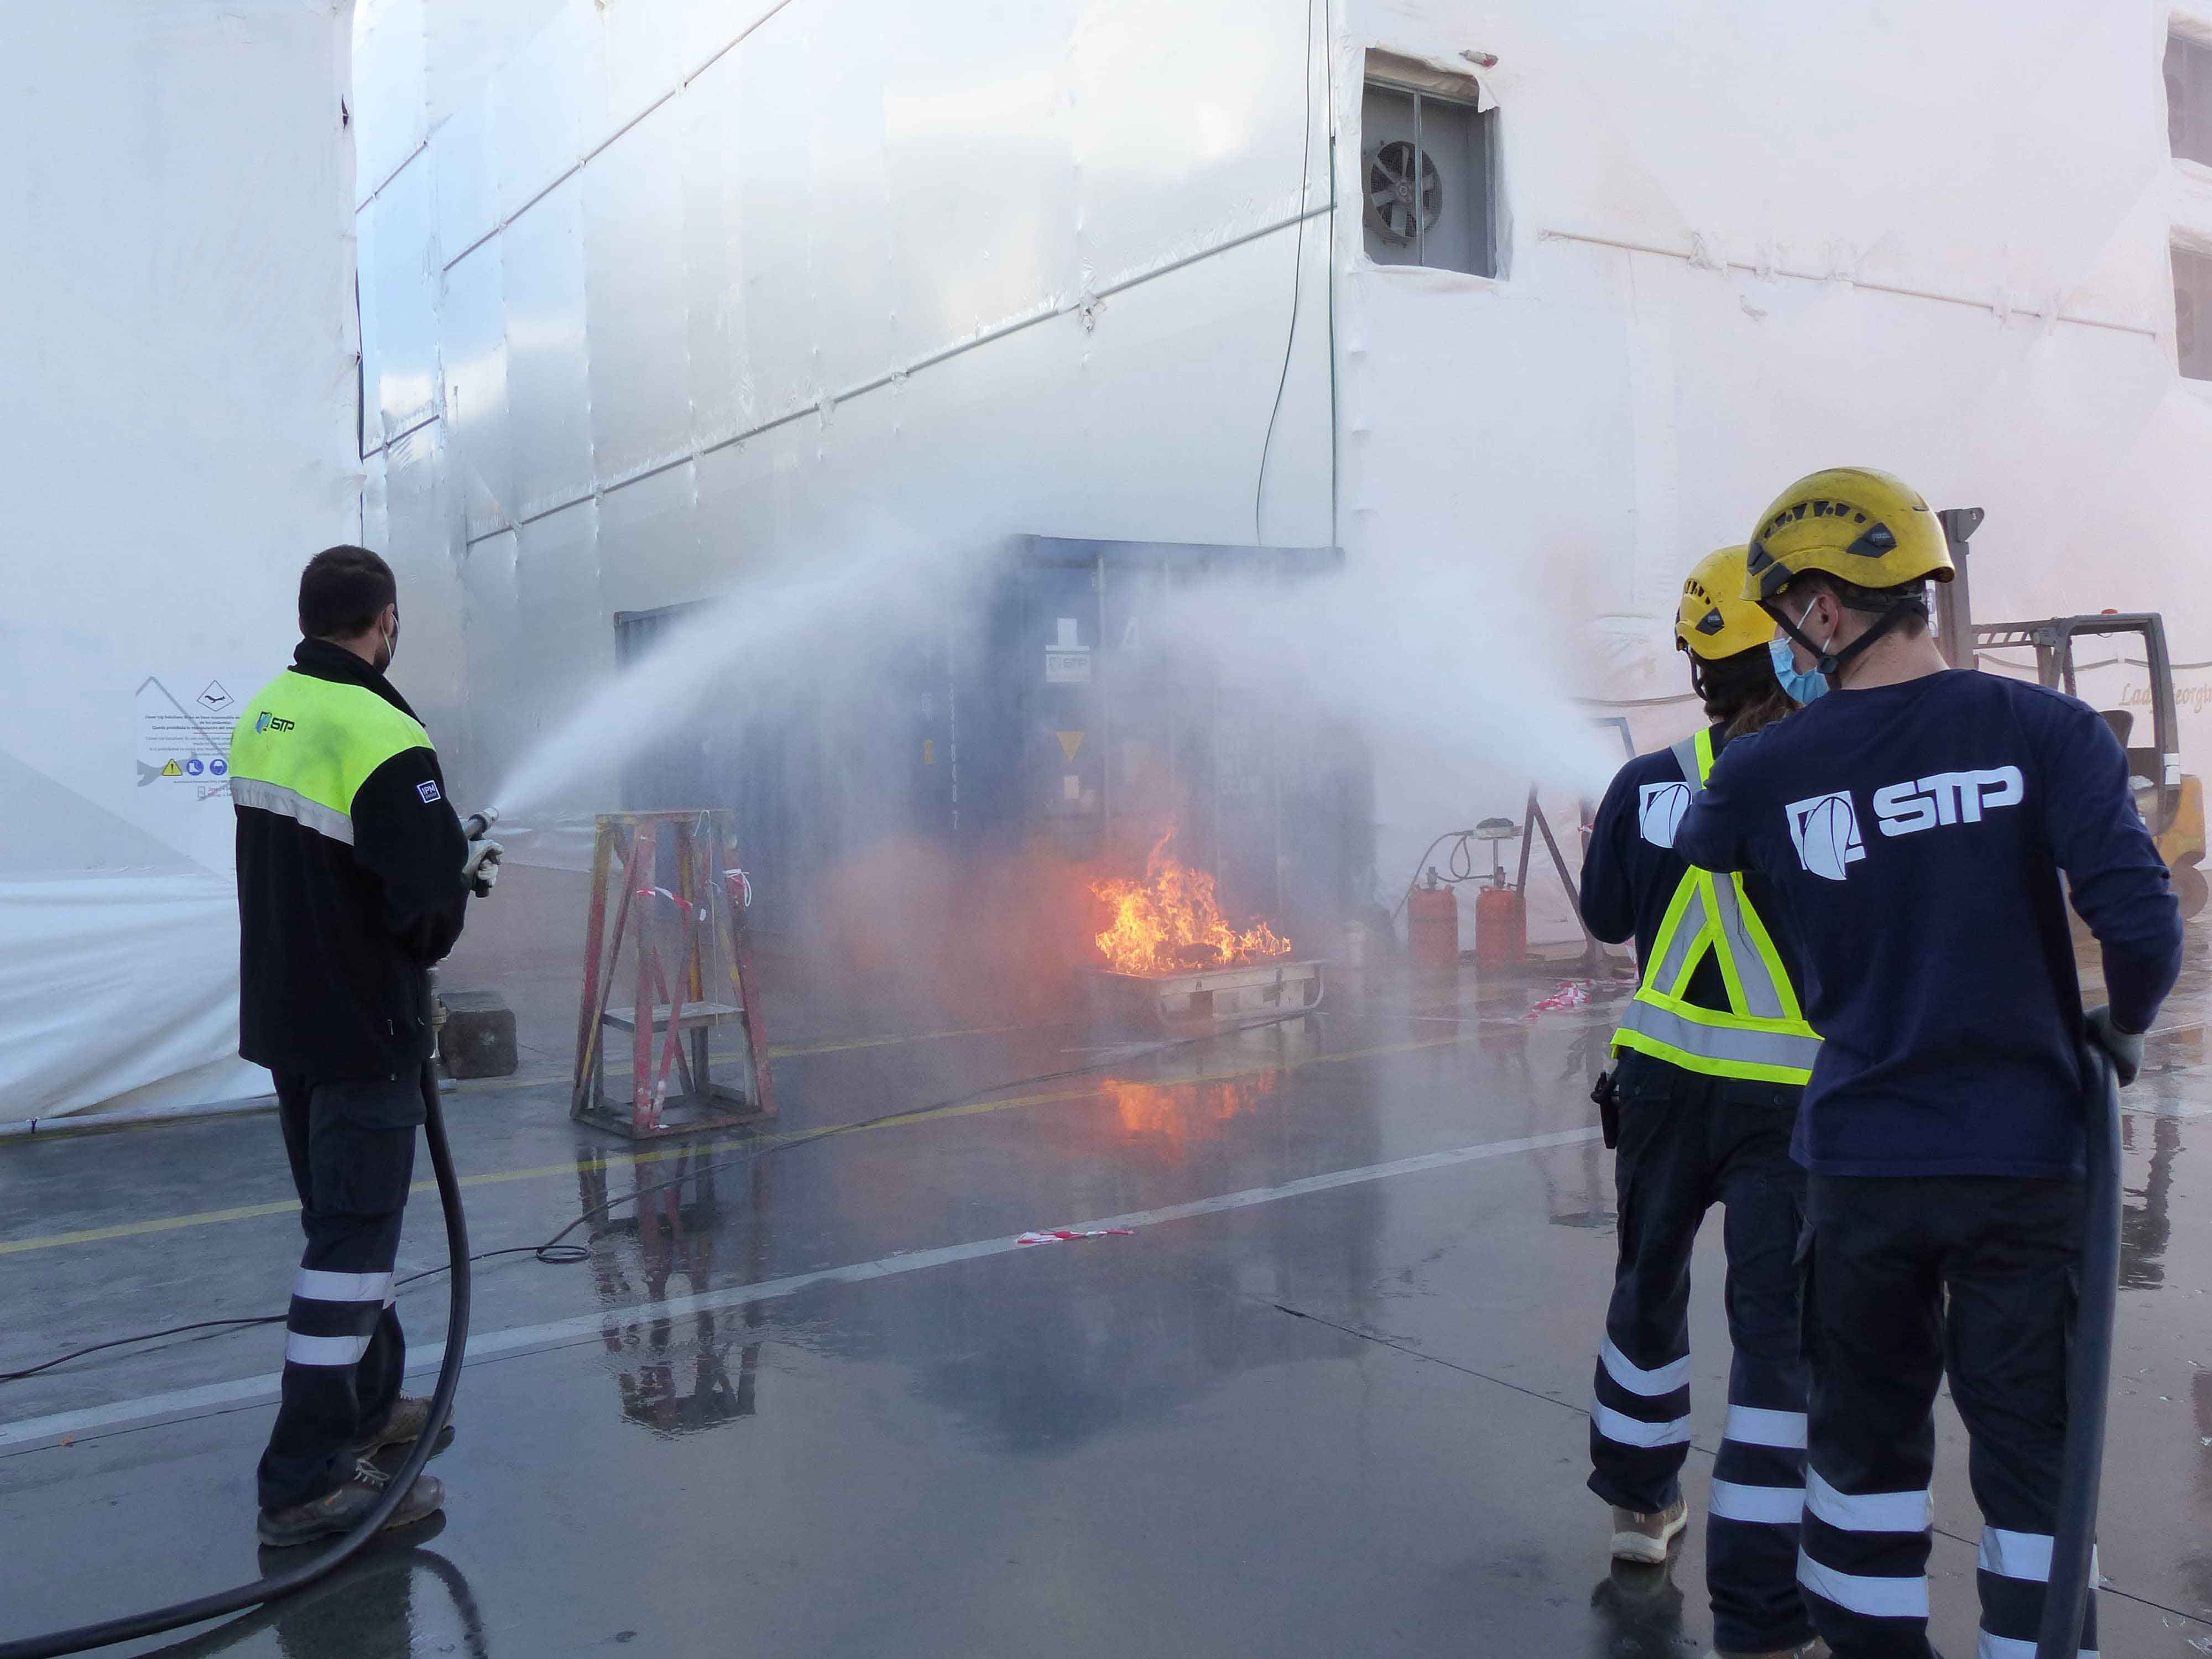  STP Shipyard Palma pone a prueba sus protocolos de seguridad con un simulacro de incendio